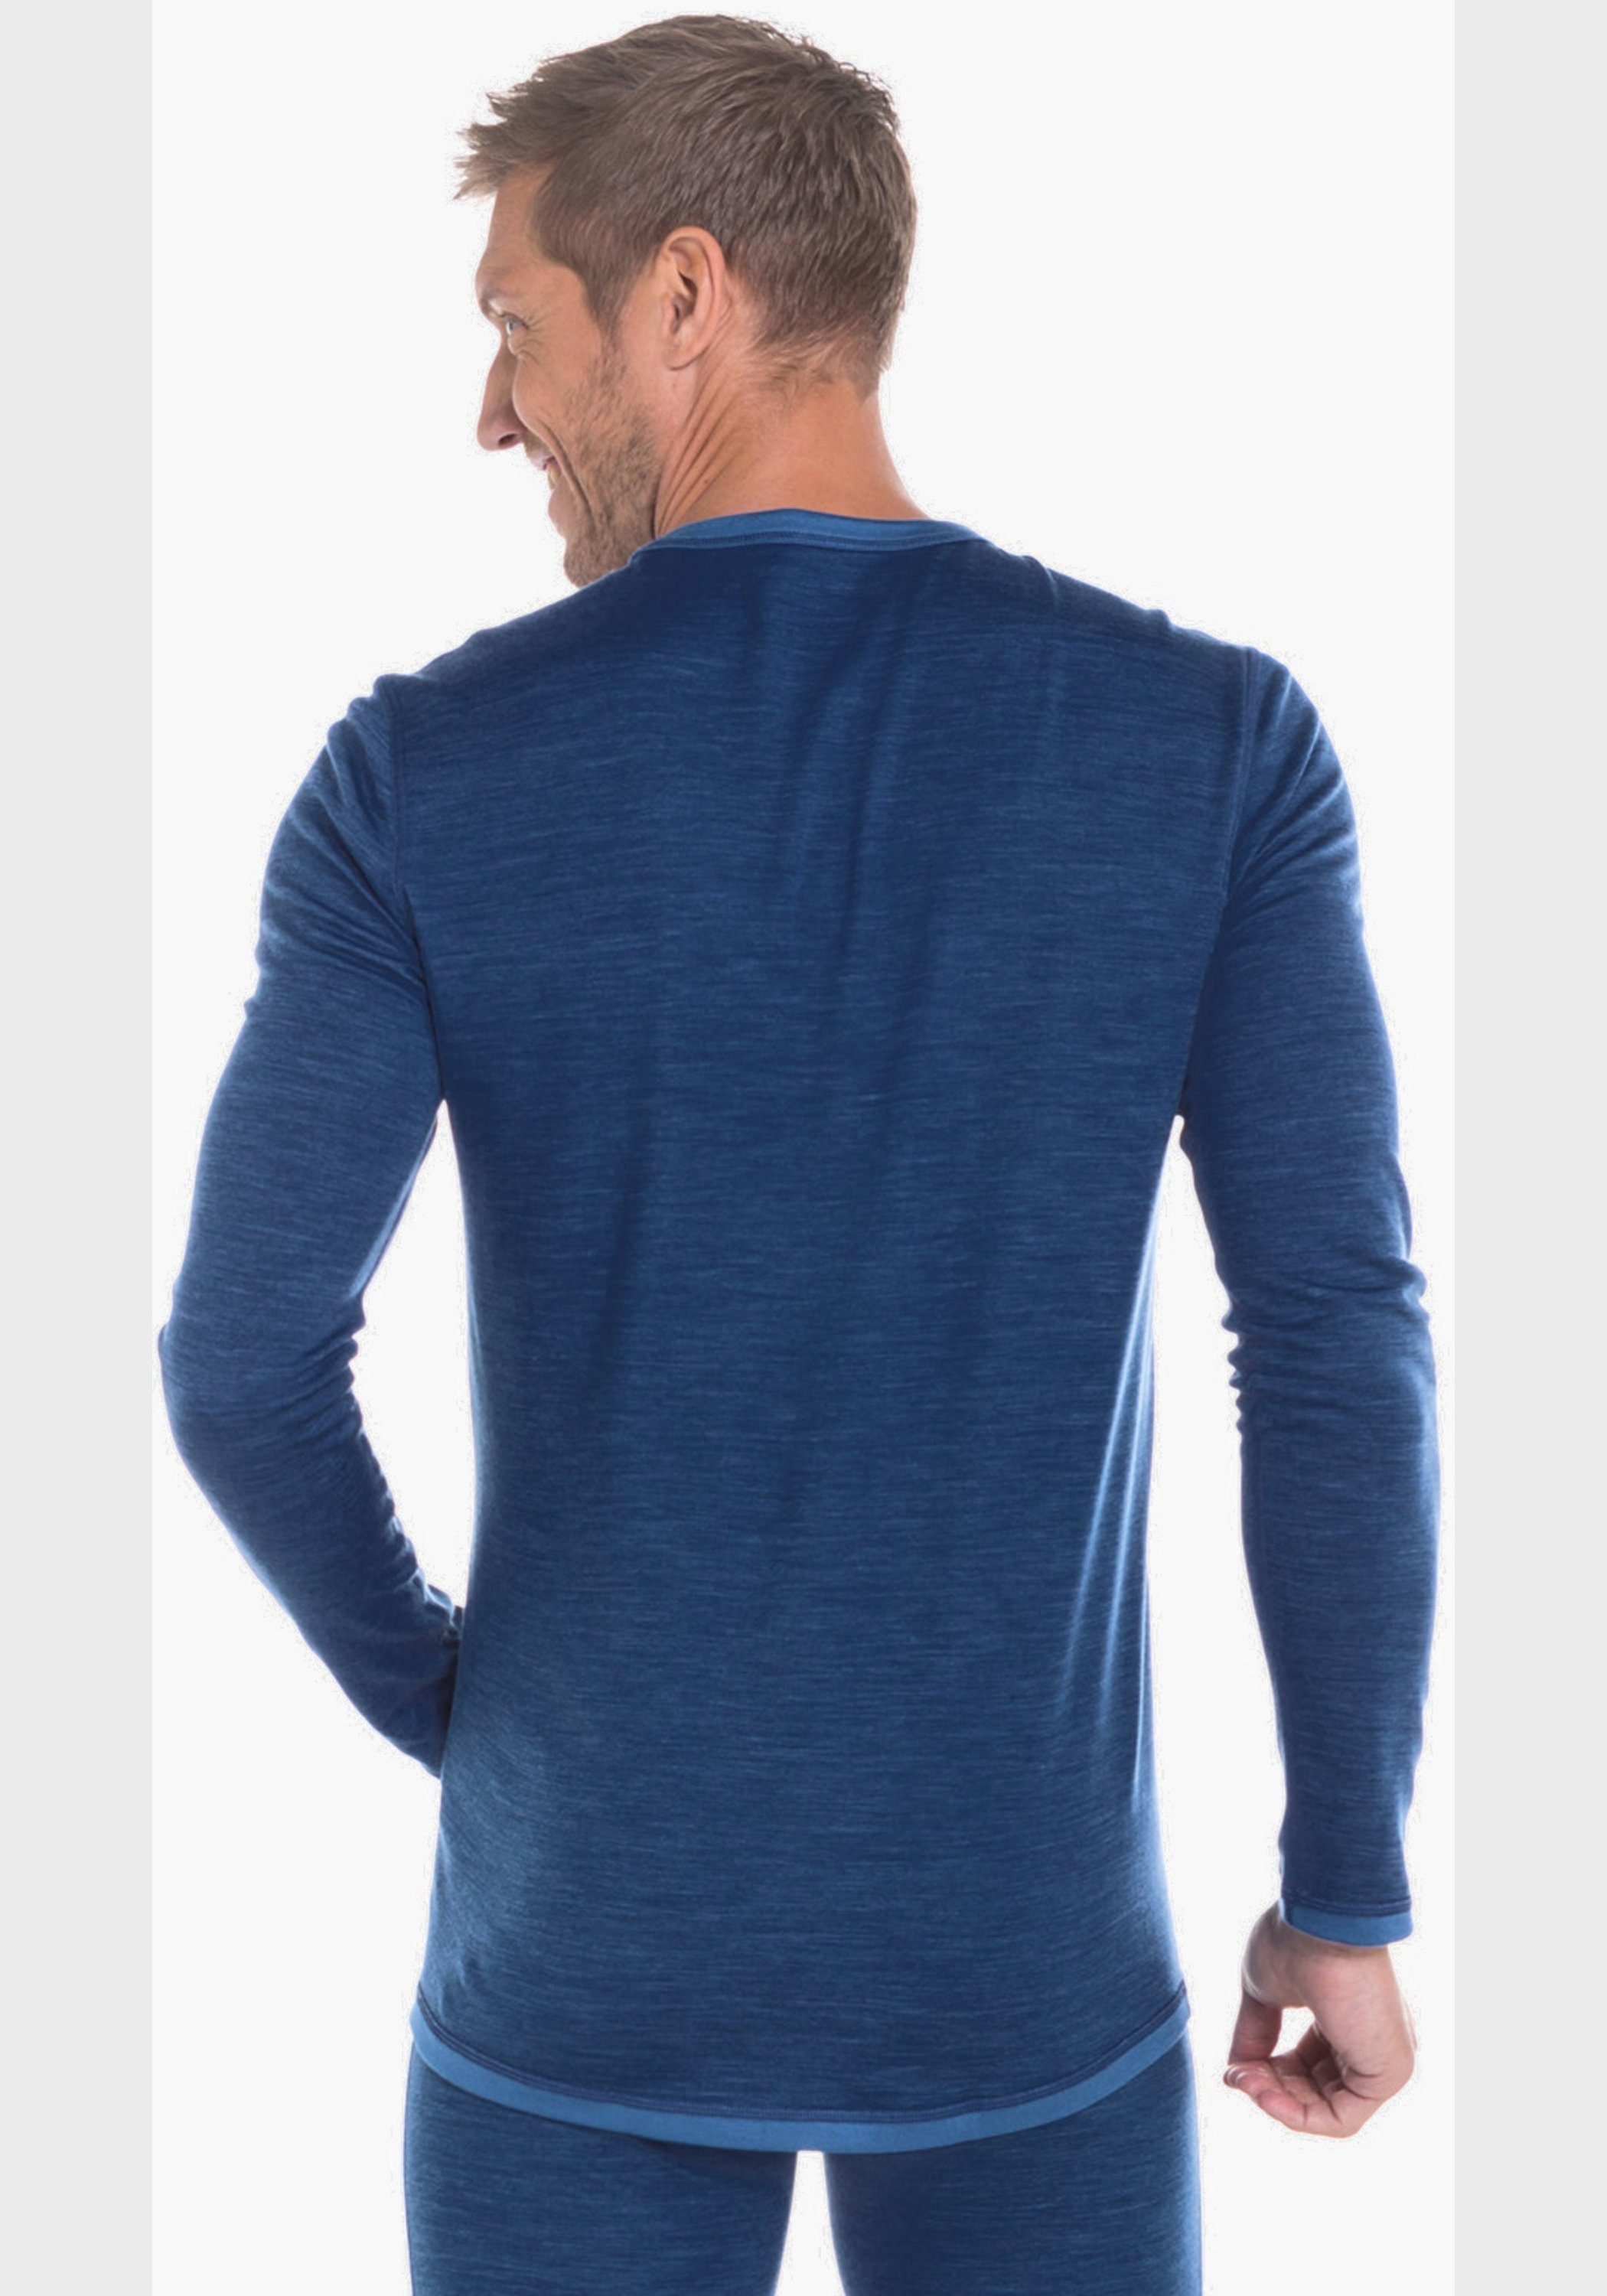 Shirt Arm 1/1 Funktionsshirt Schöffel Blau Merino Sport M